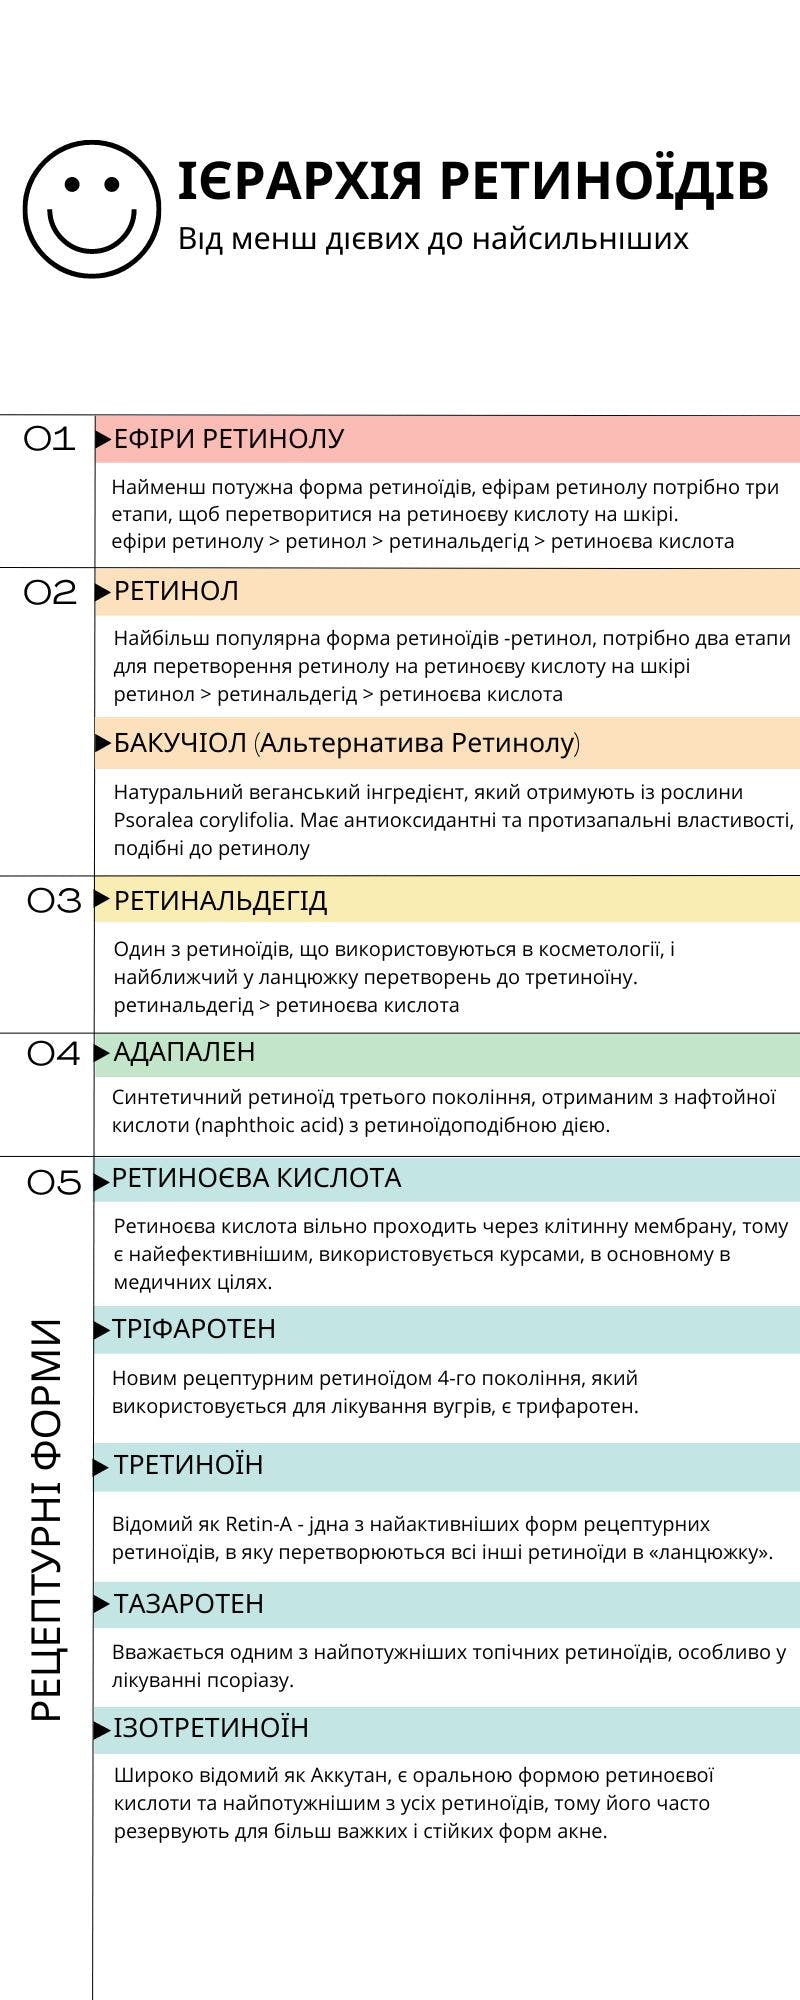 Ієрархія Ретиноїдів. Ретинол, ретиніл та інші види